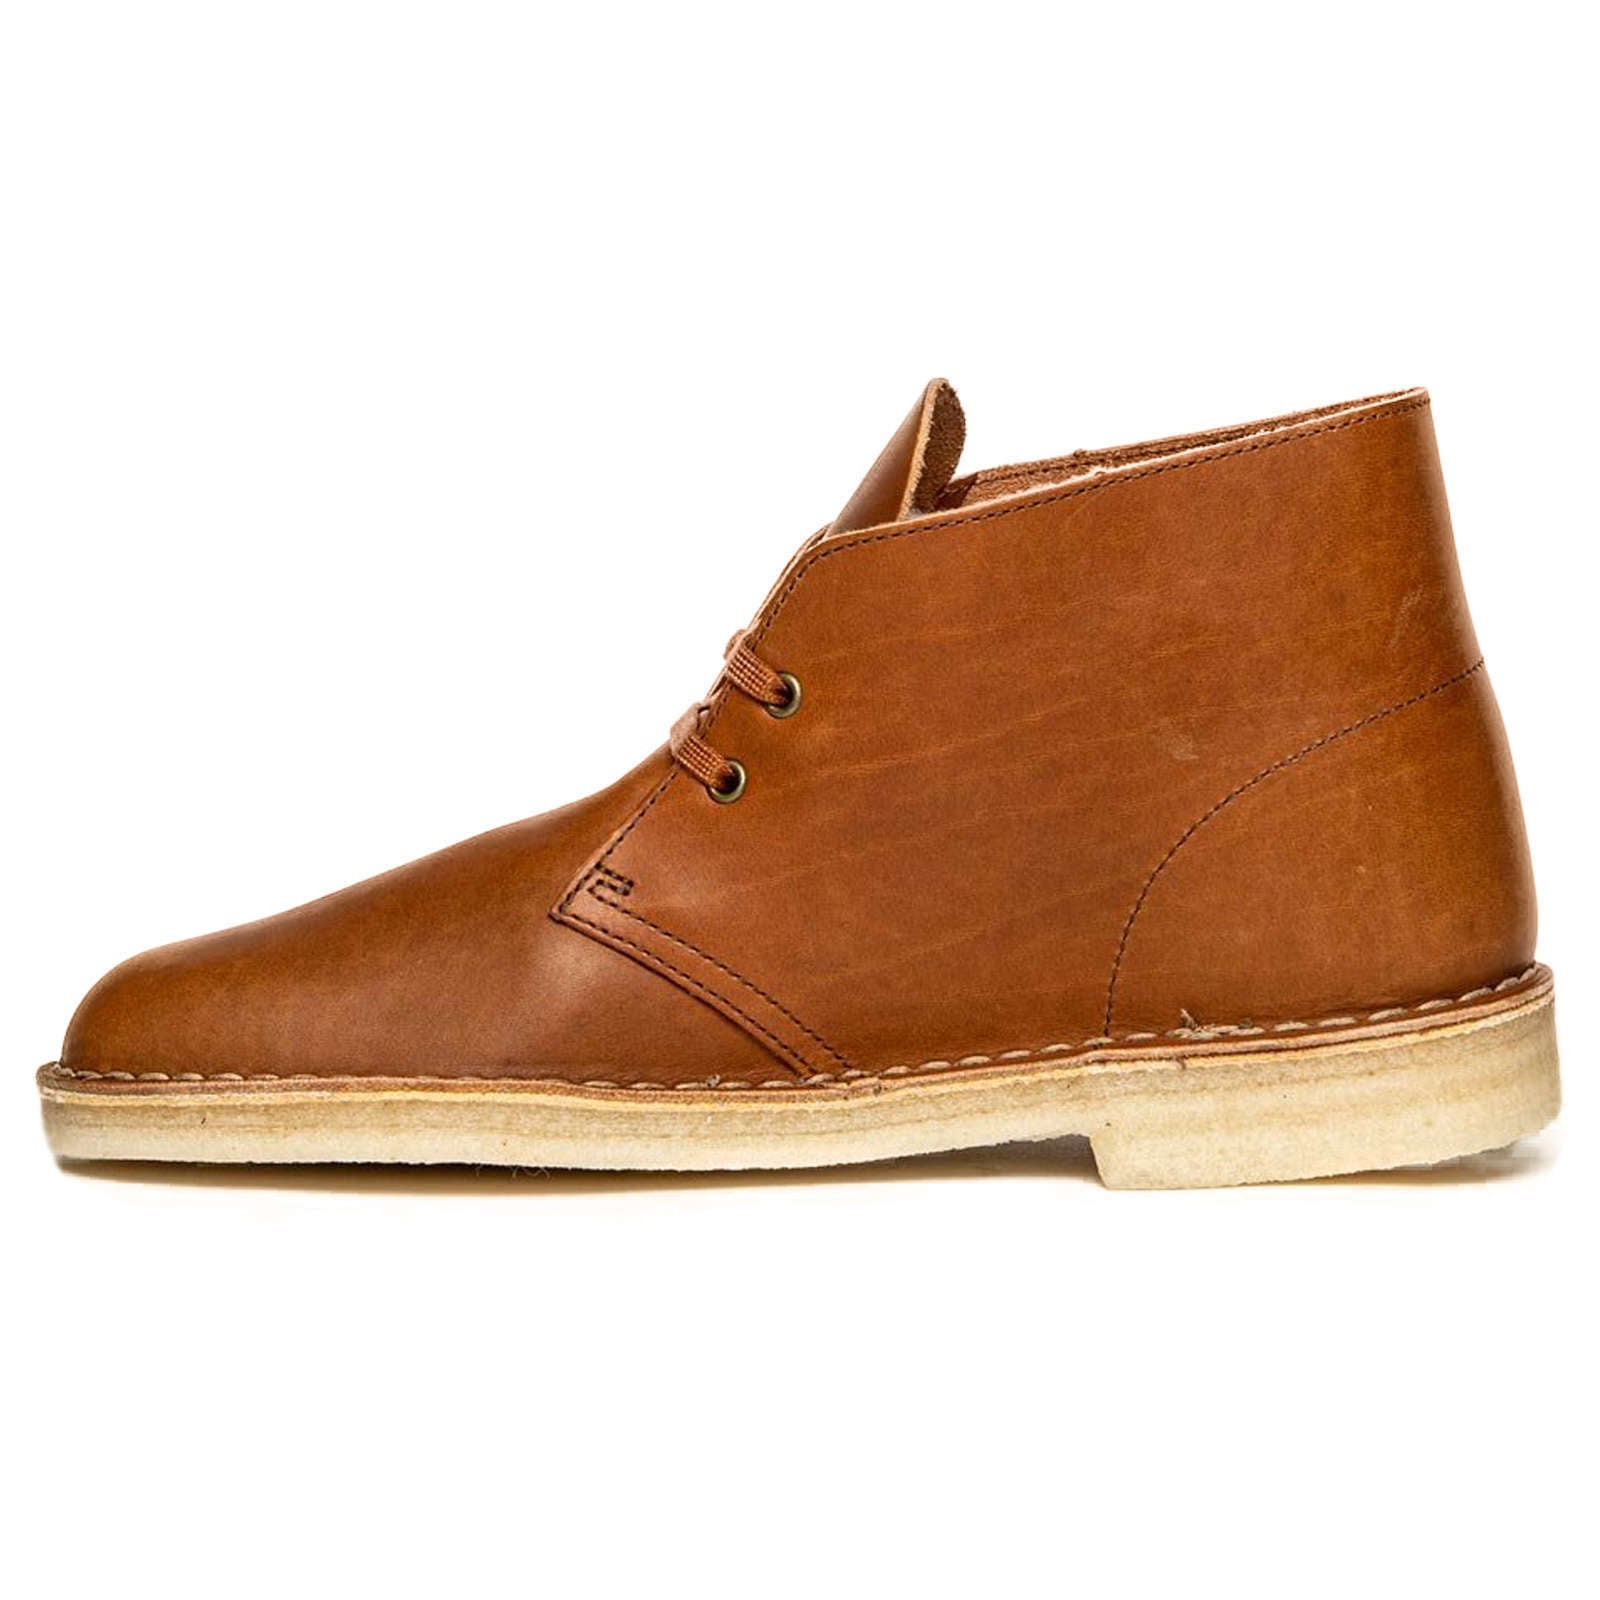 Clarks Originals Desert Boot Leather Men's Boots#color_dark tan